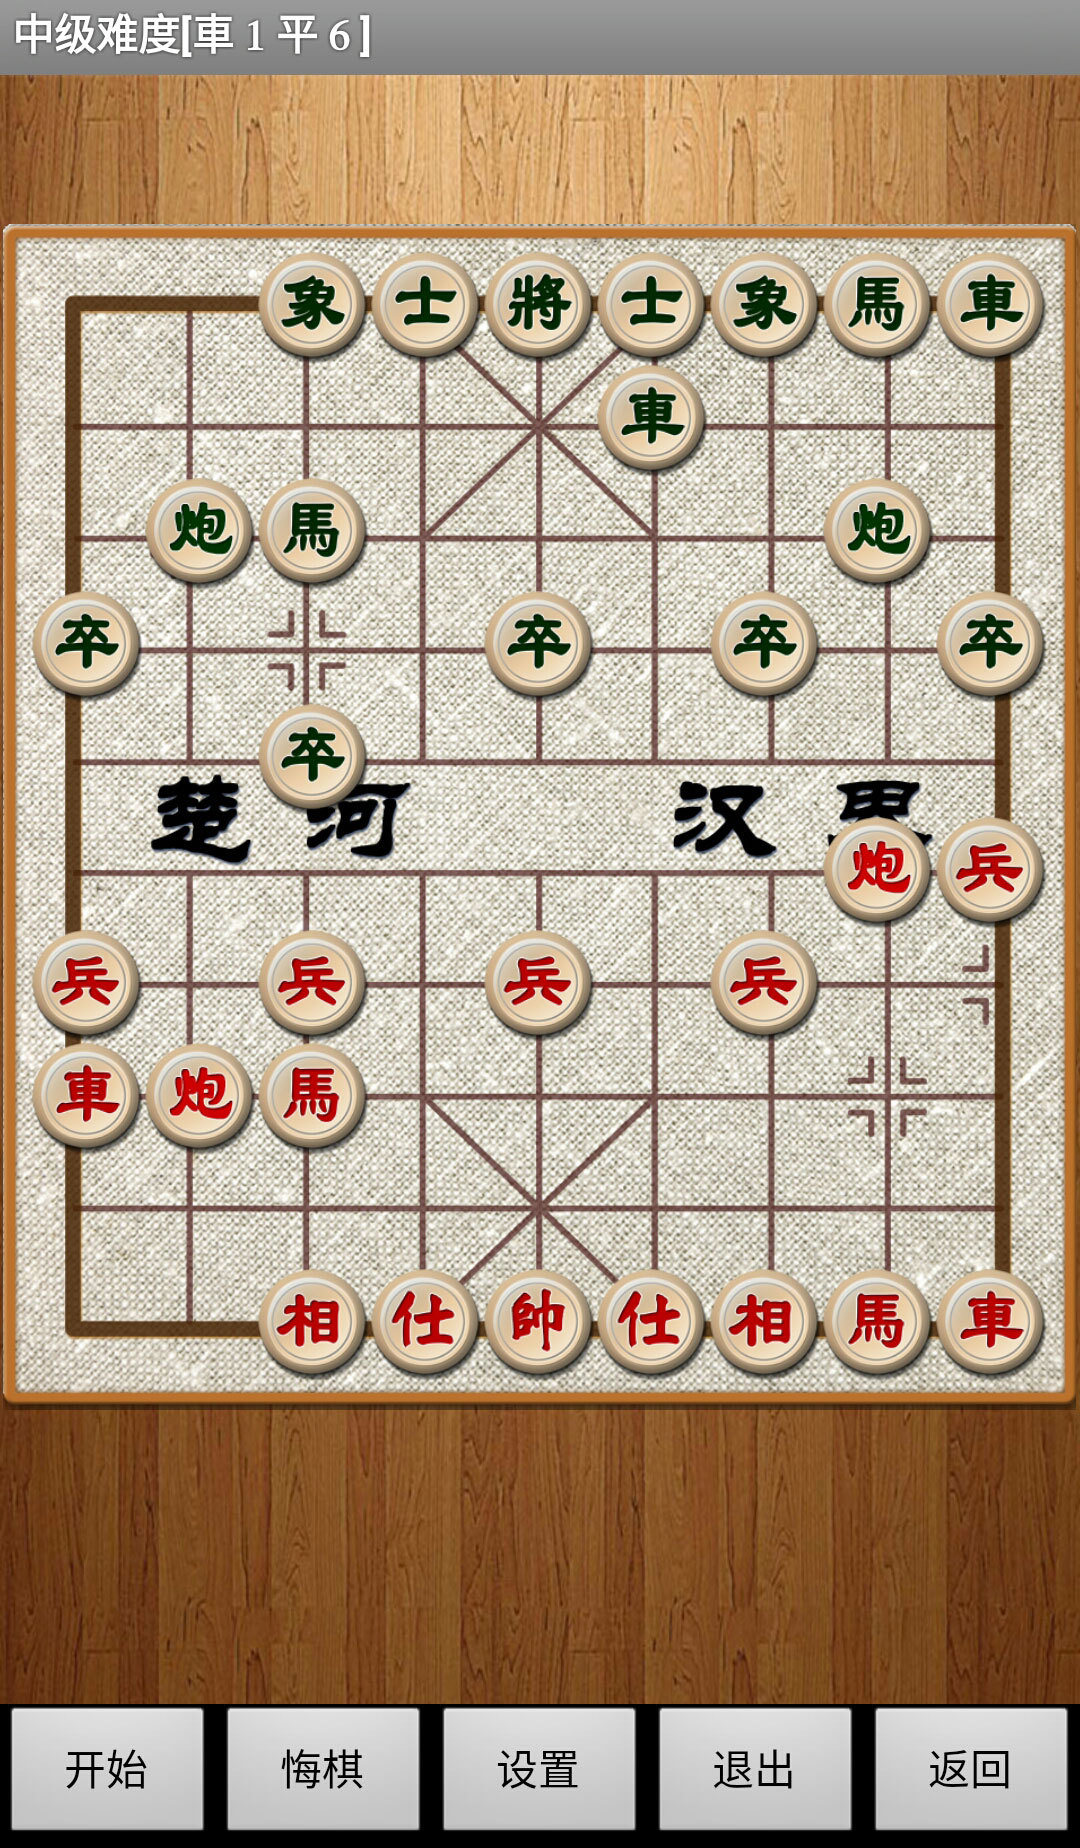 经典中国象棋APP V4.3.5 安卓版截图4